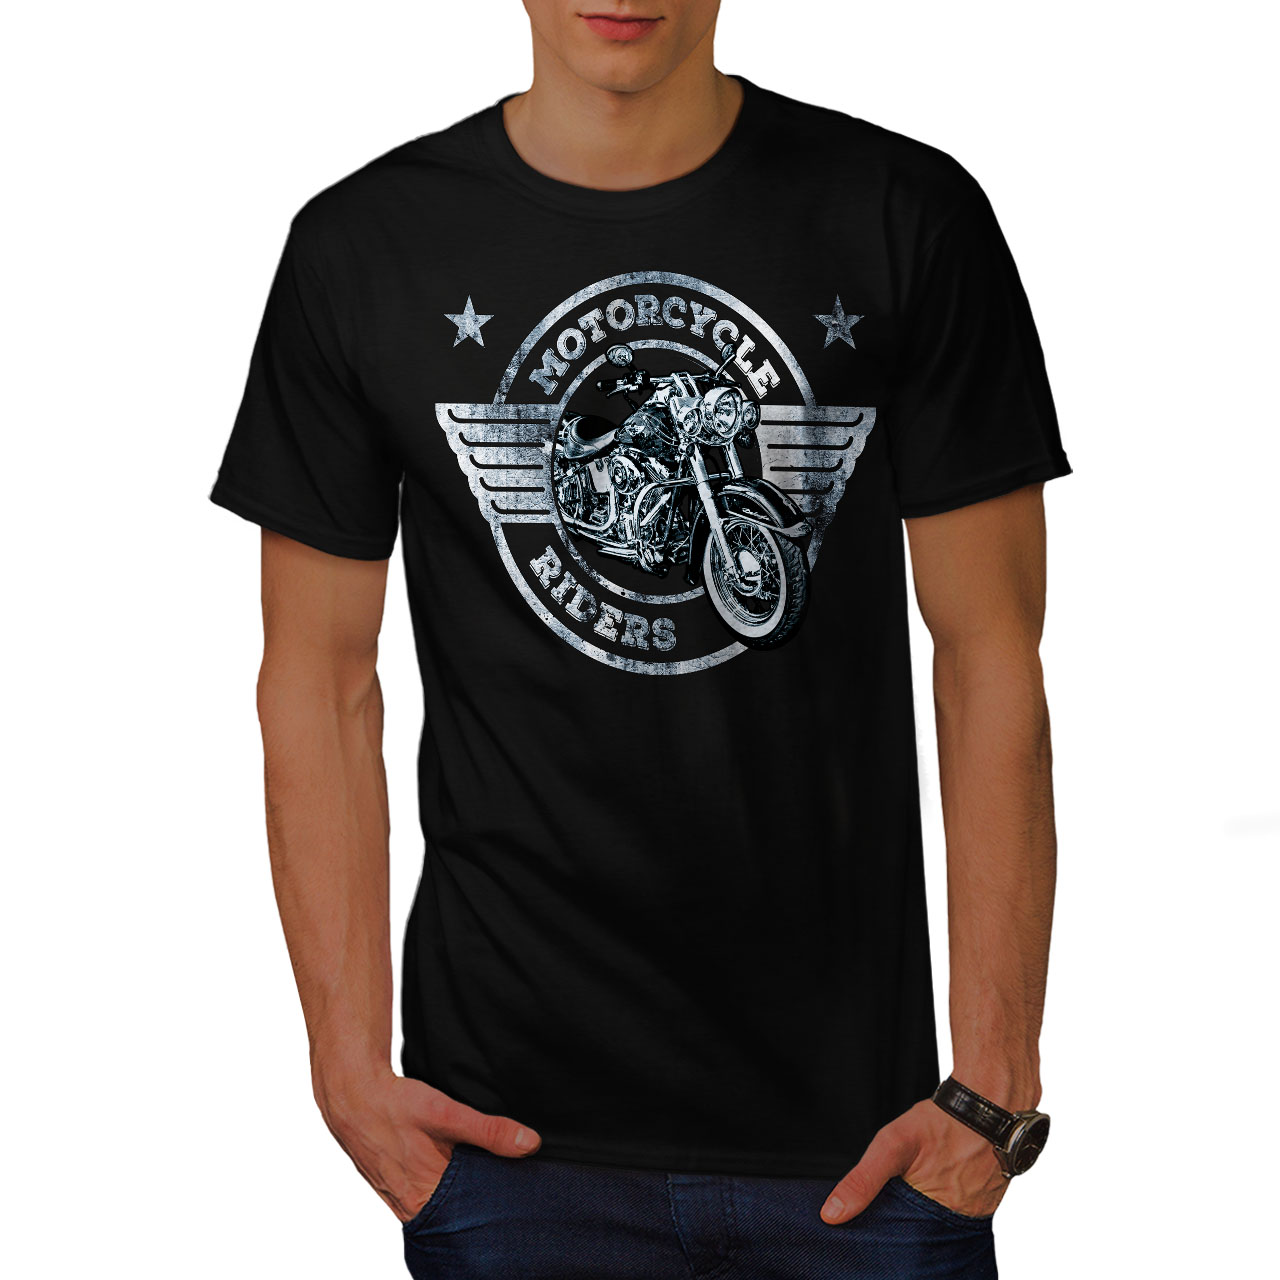 Wellcoda Rider Motorcycle Biker Mens T-shirt, Bike Graphic Design ...